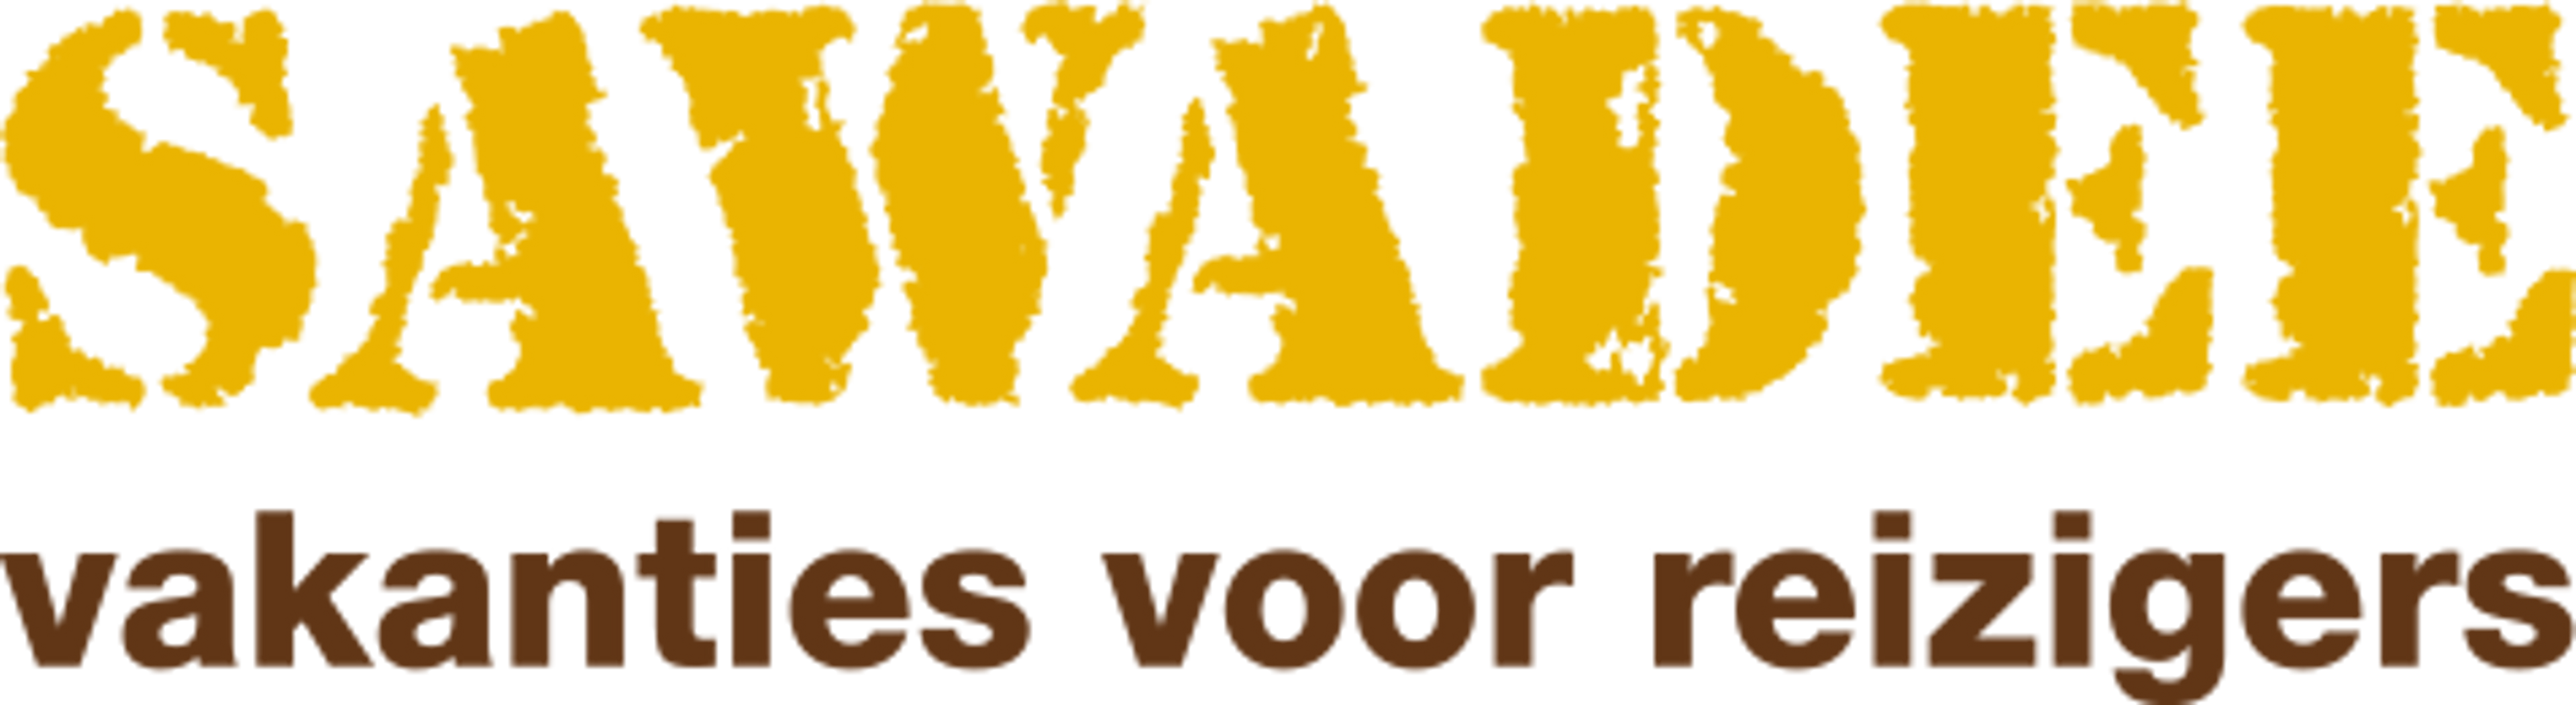 Sawadee.nl logo